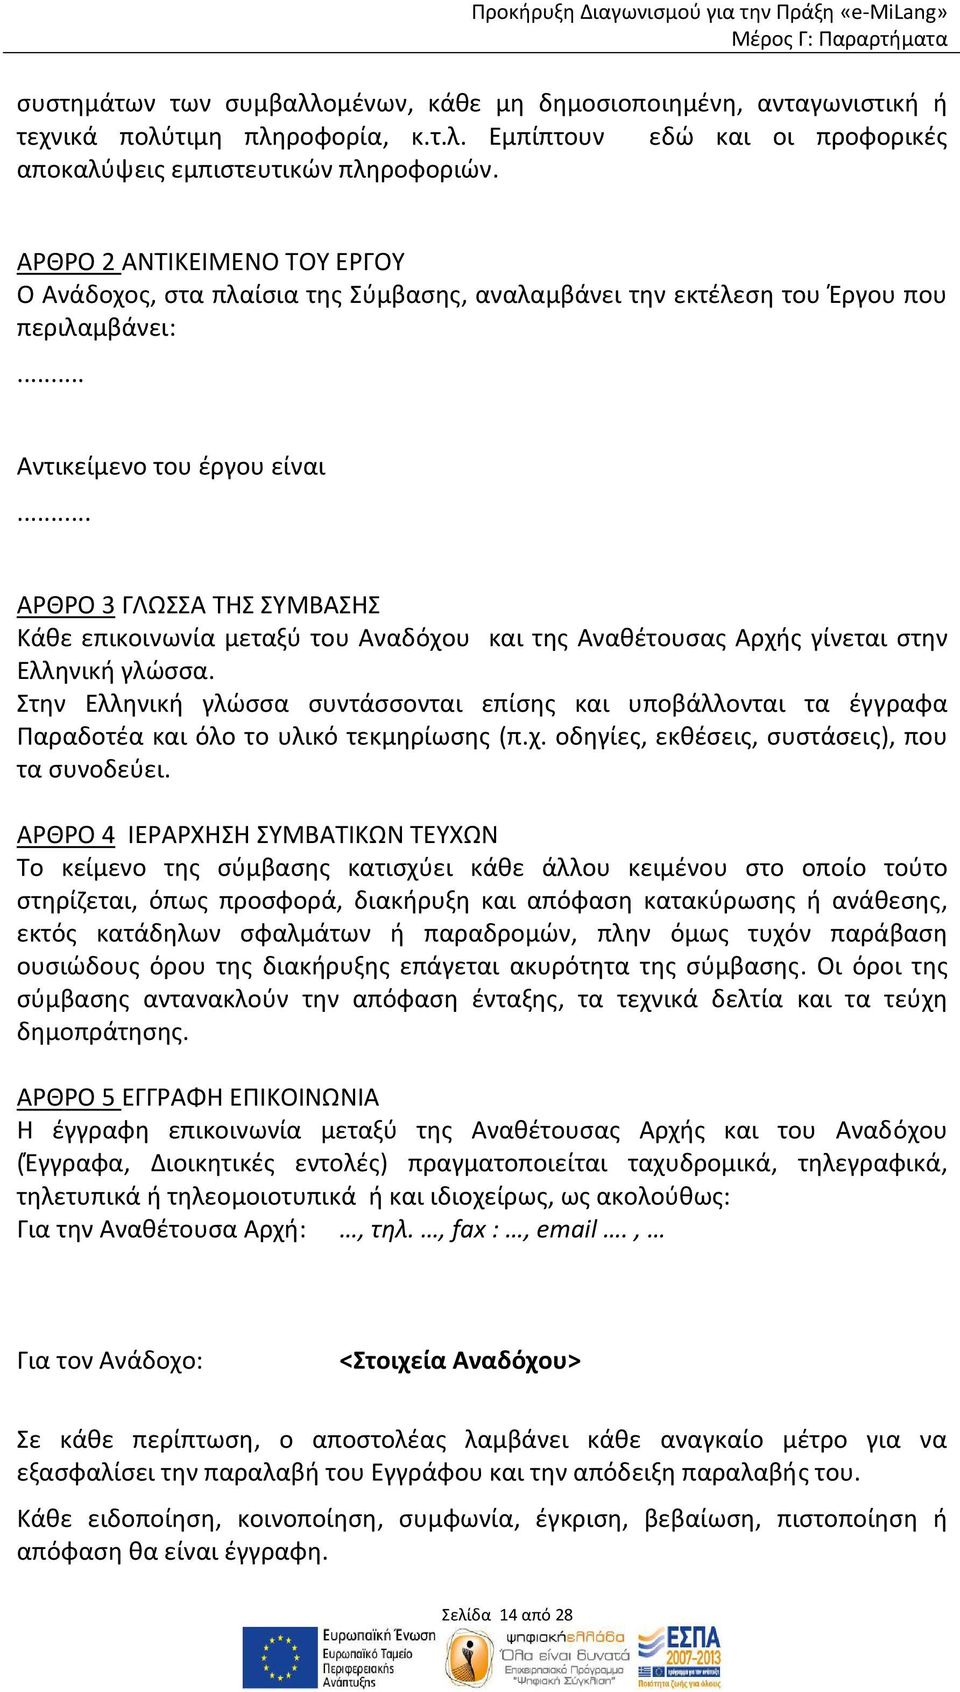 .. ΑΡΘΡΟ 3 ΓΛΩΣΣΑ ΤΗΣ ΣΥΜΒΑΣΗΣ Κάθε επικοινωνία μεταξύ του Αναδόχου και της Αναθέτουσας Αρχής γίνεται στην Ελληνική γλώσσα.